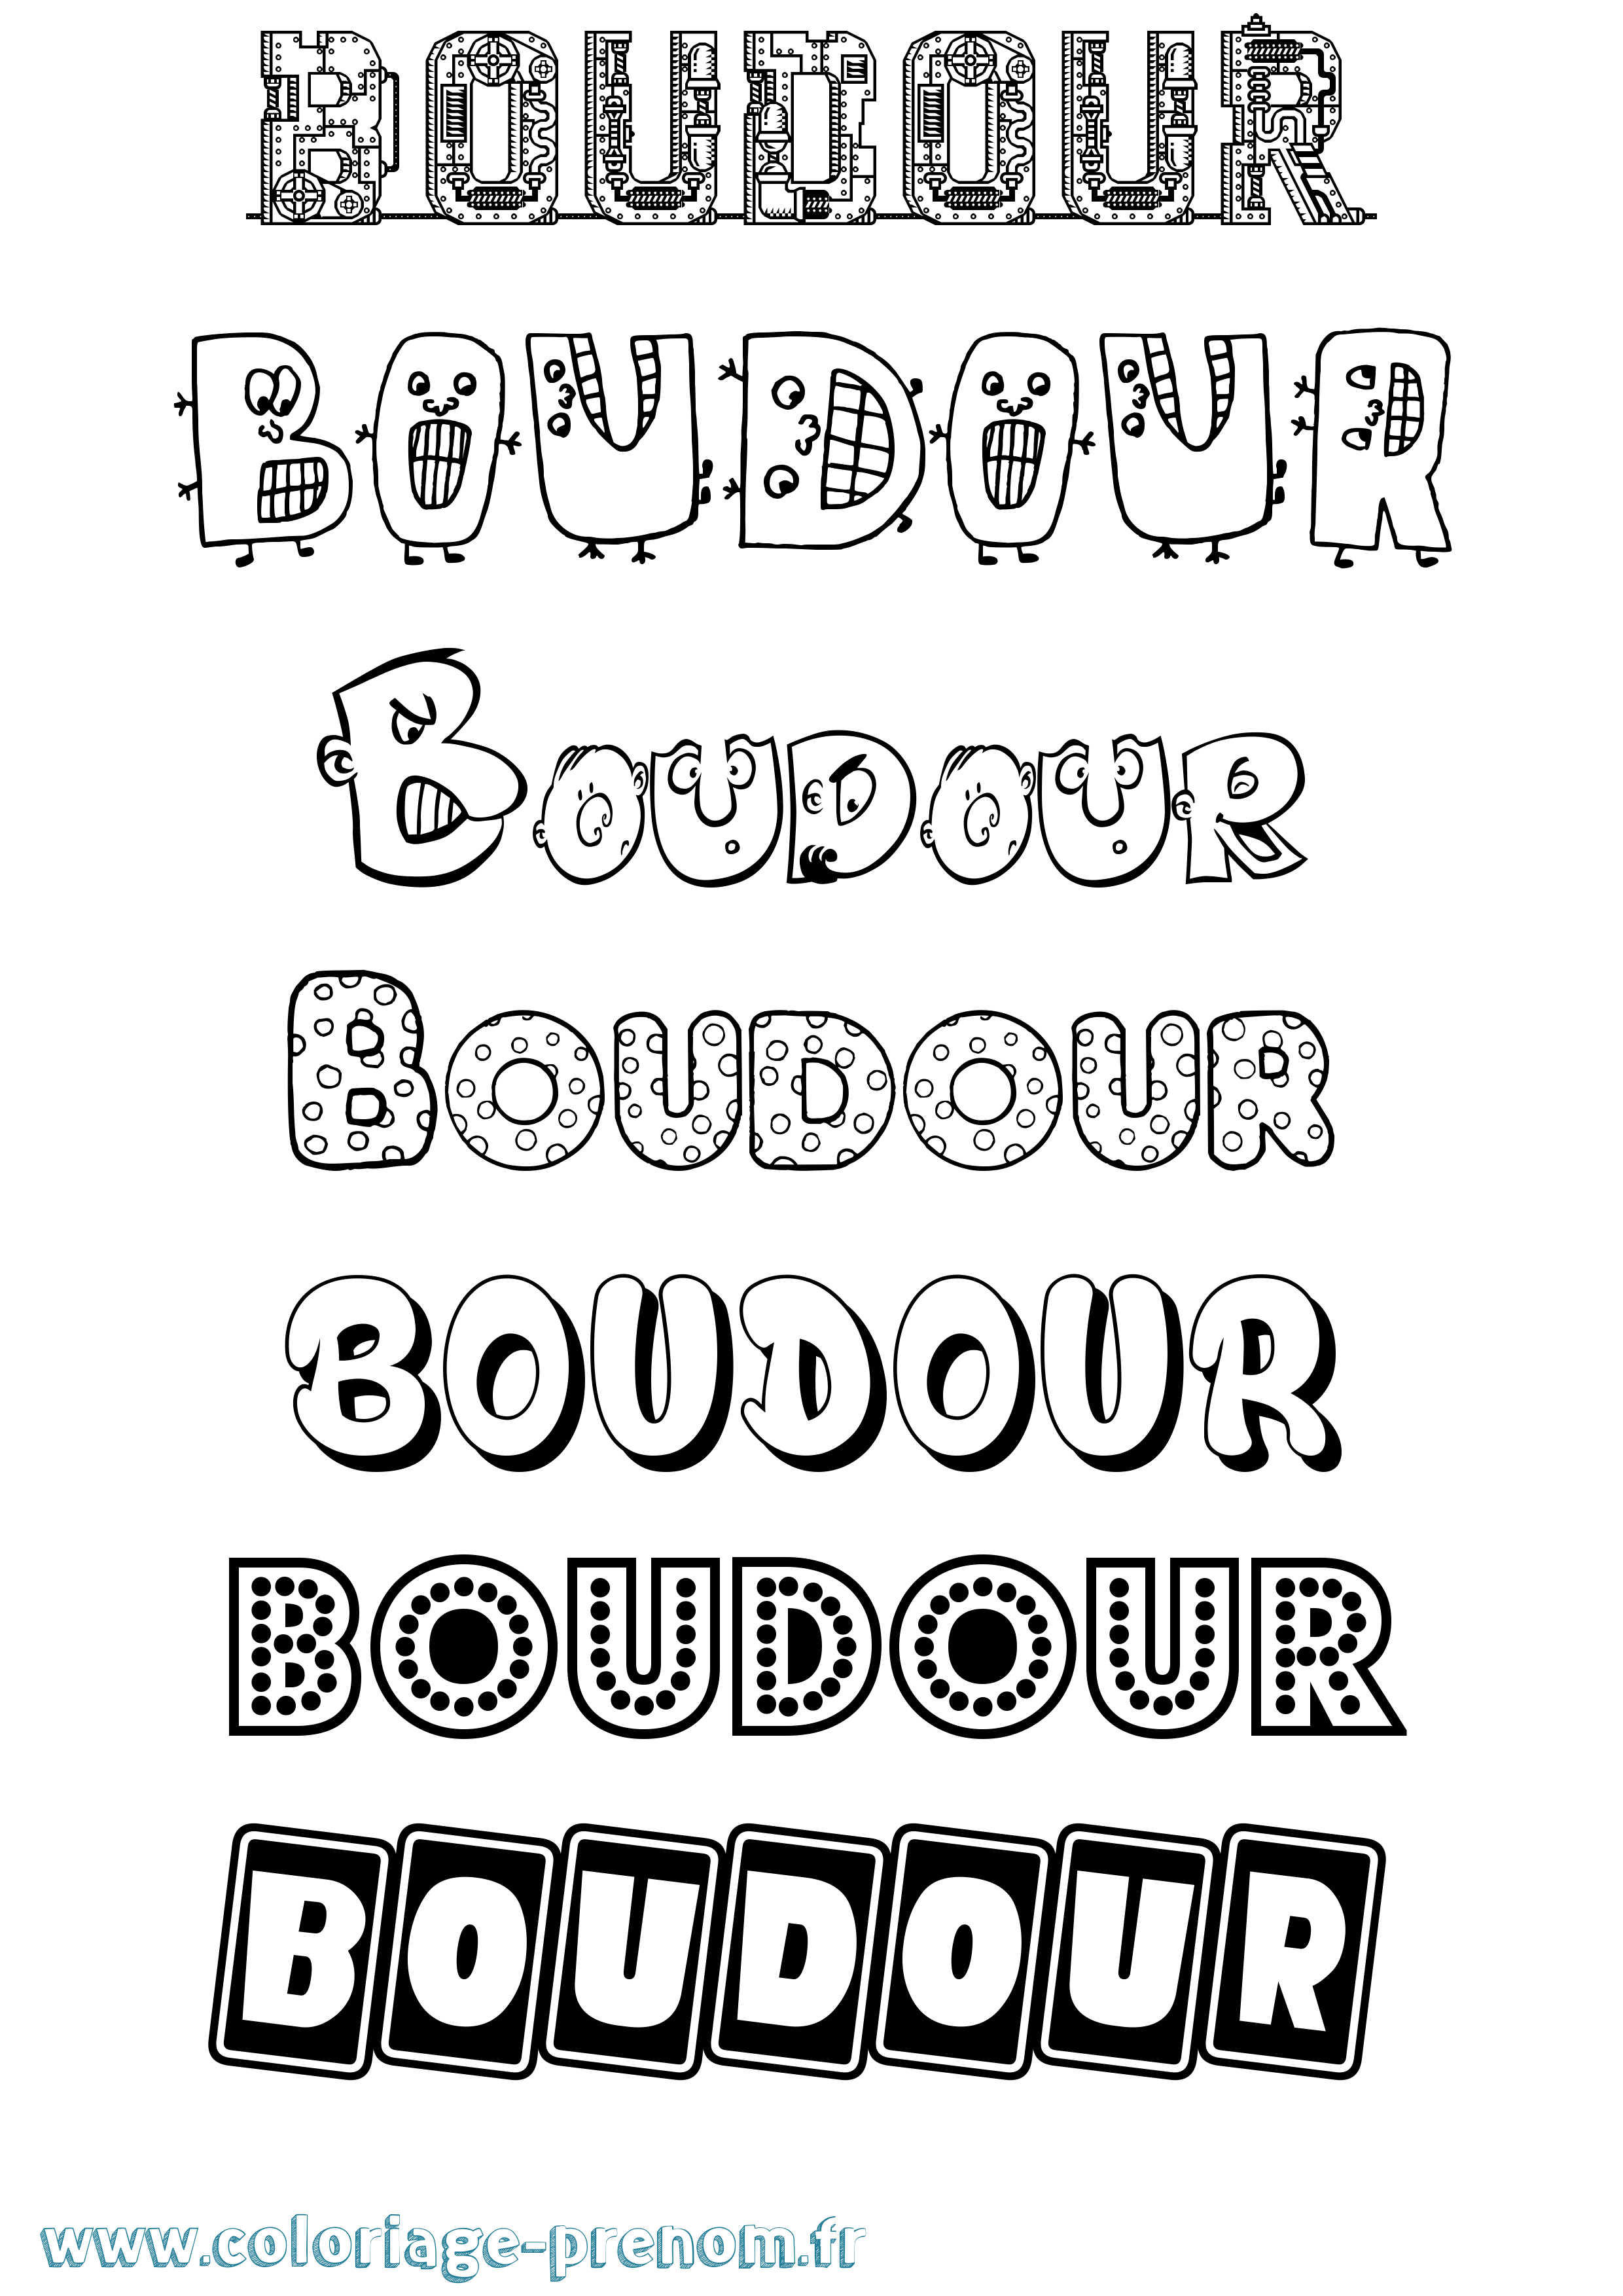 Coloriage prénom Boudour Fun